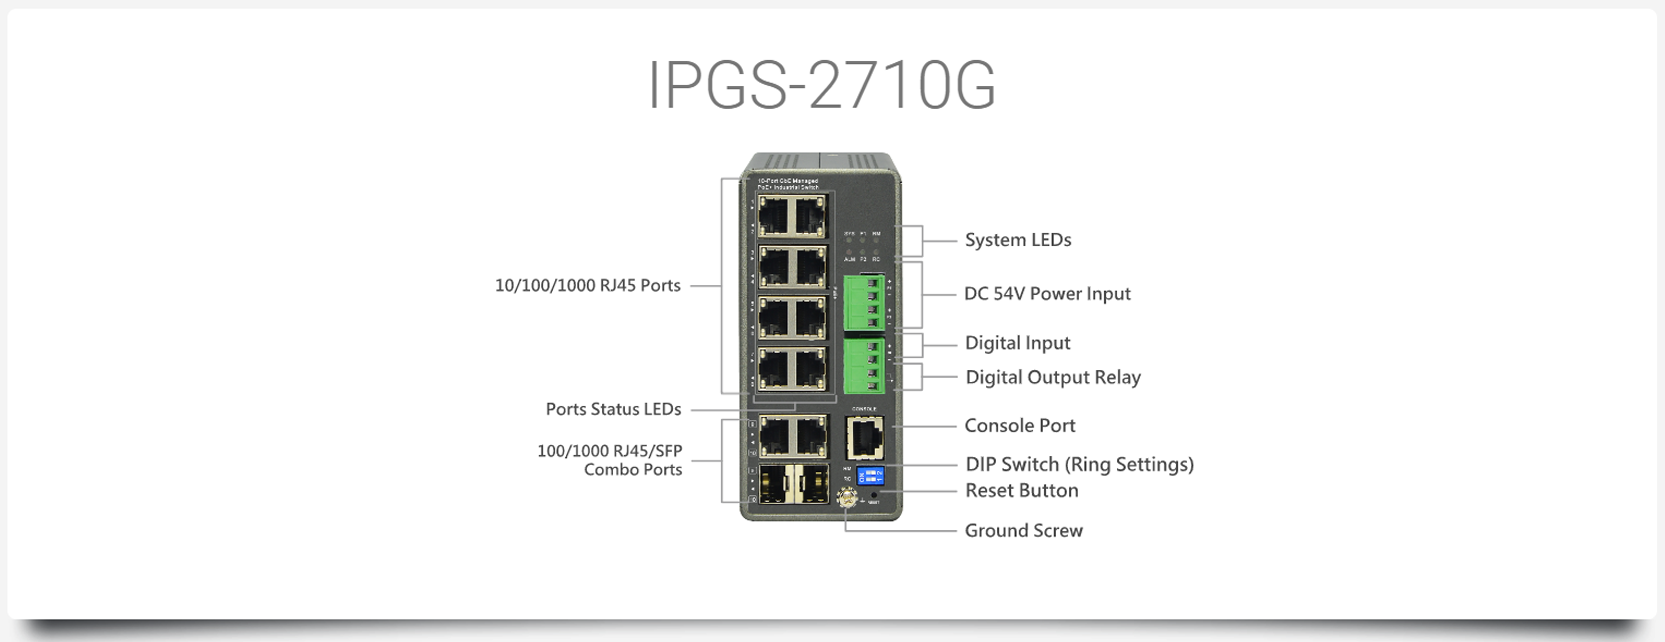 IPGS-2710G